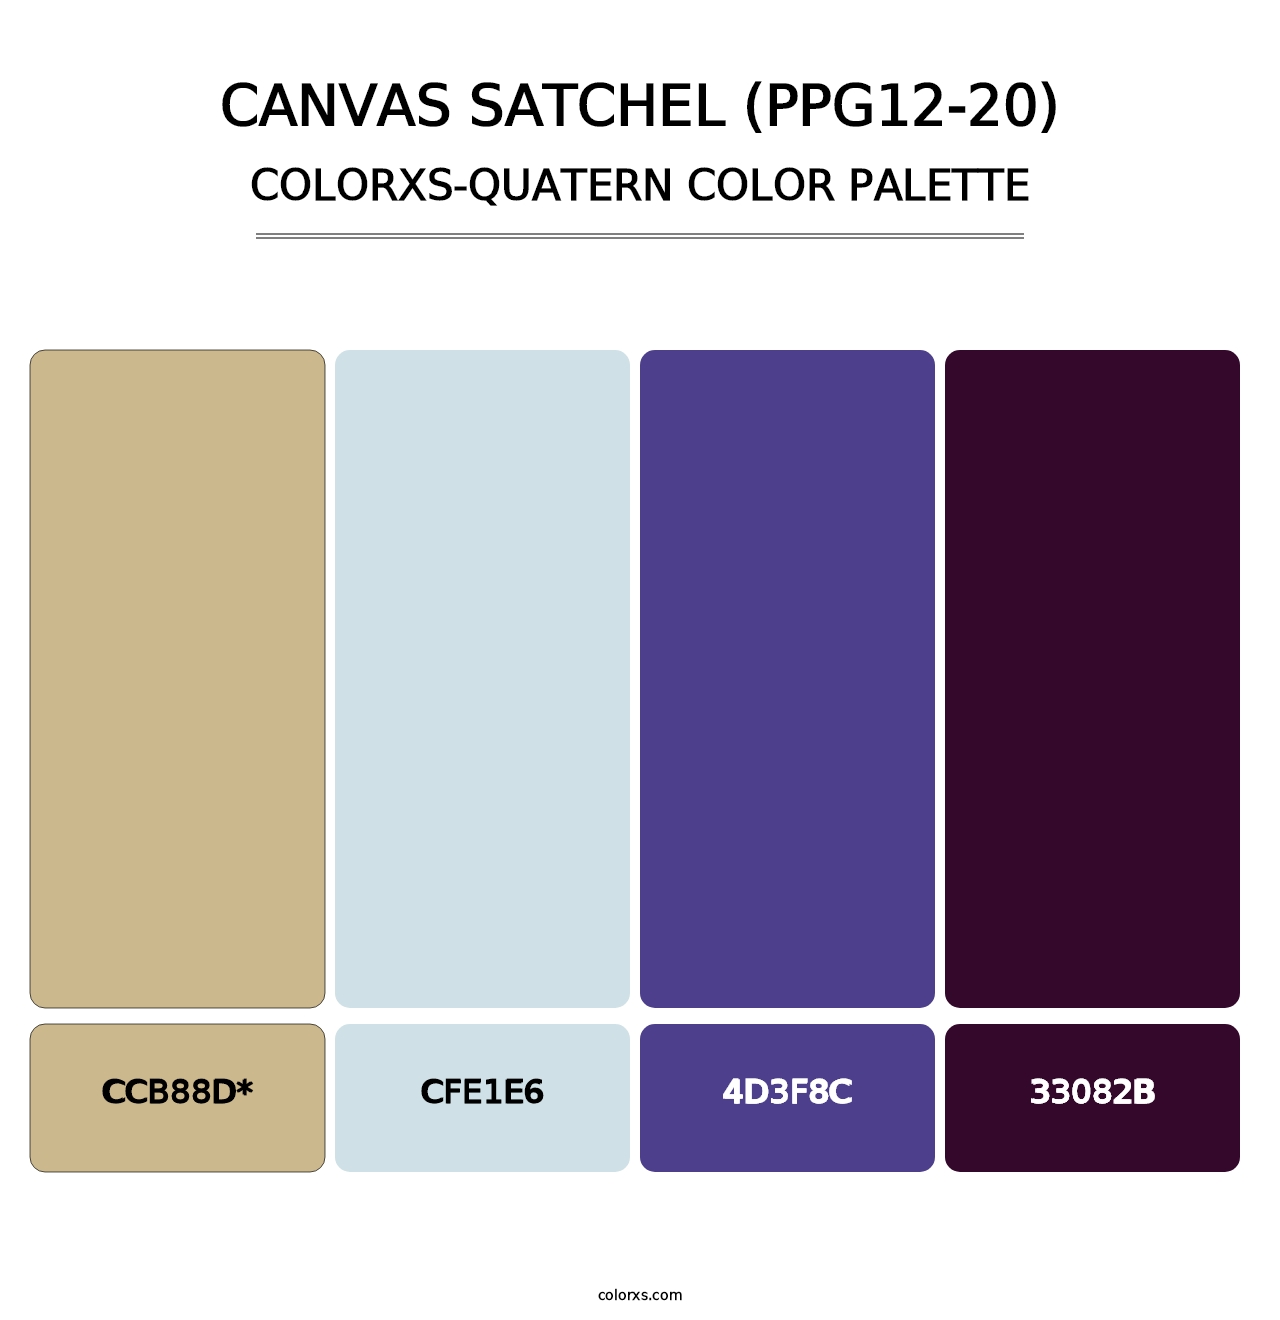 Canvas Satchel (PPG12-20) - Colorxs Quatern Palette